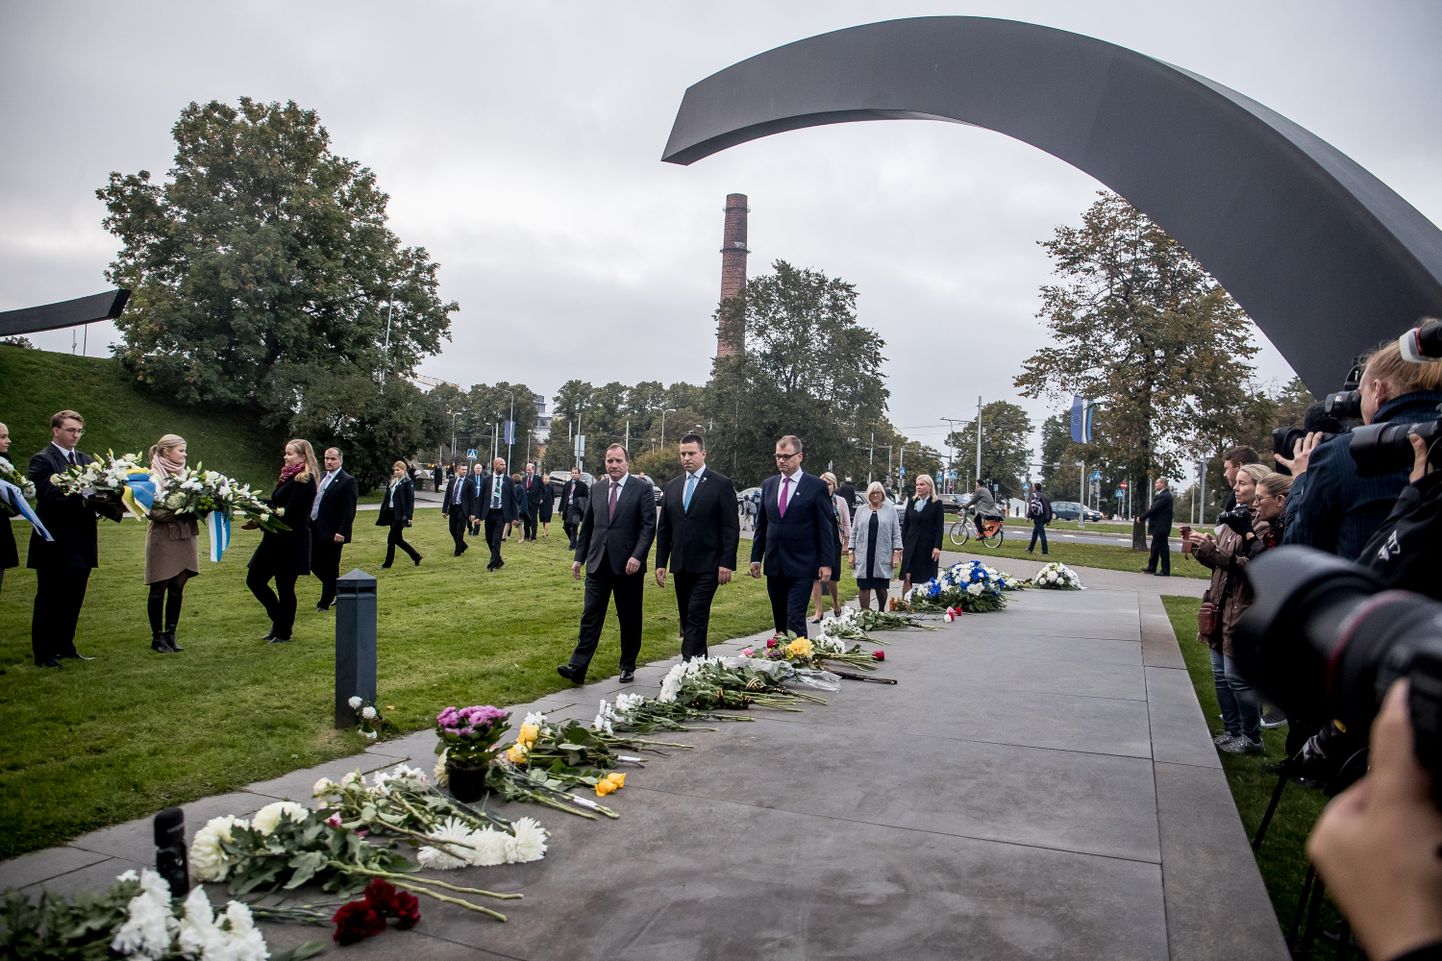 Estonial hukkunute mälestustseremoonia 2017. aastal.